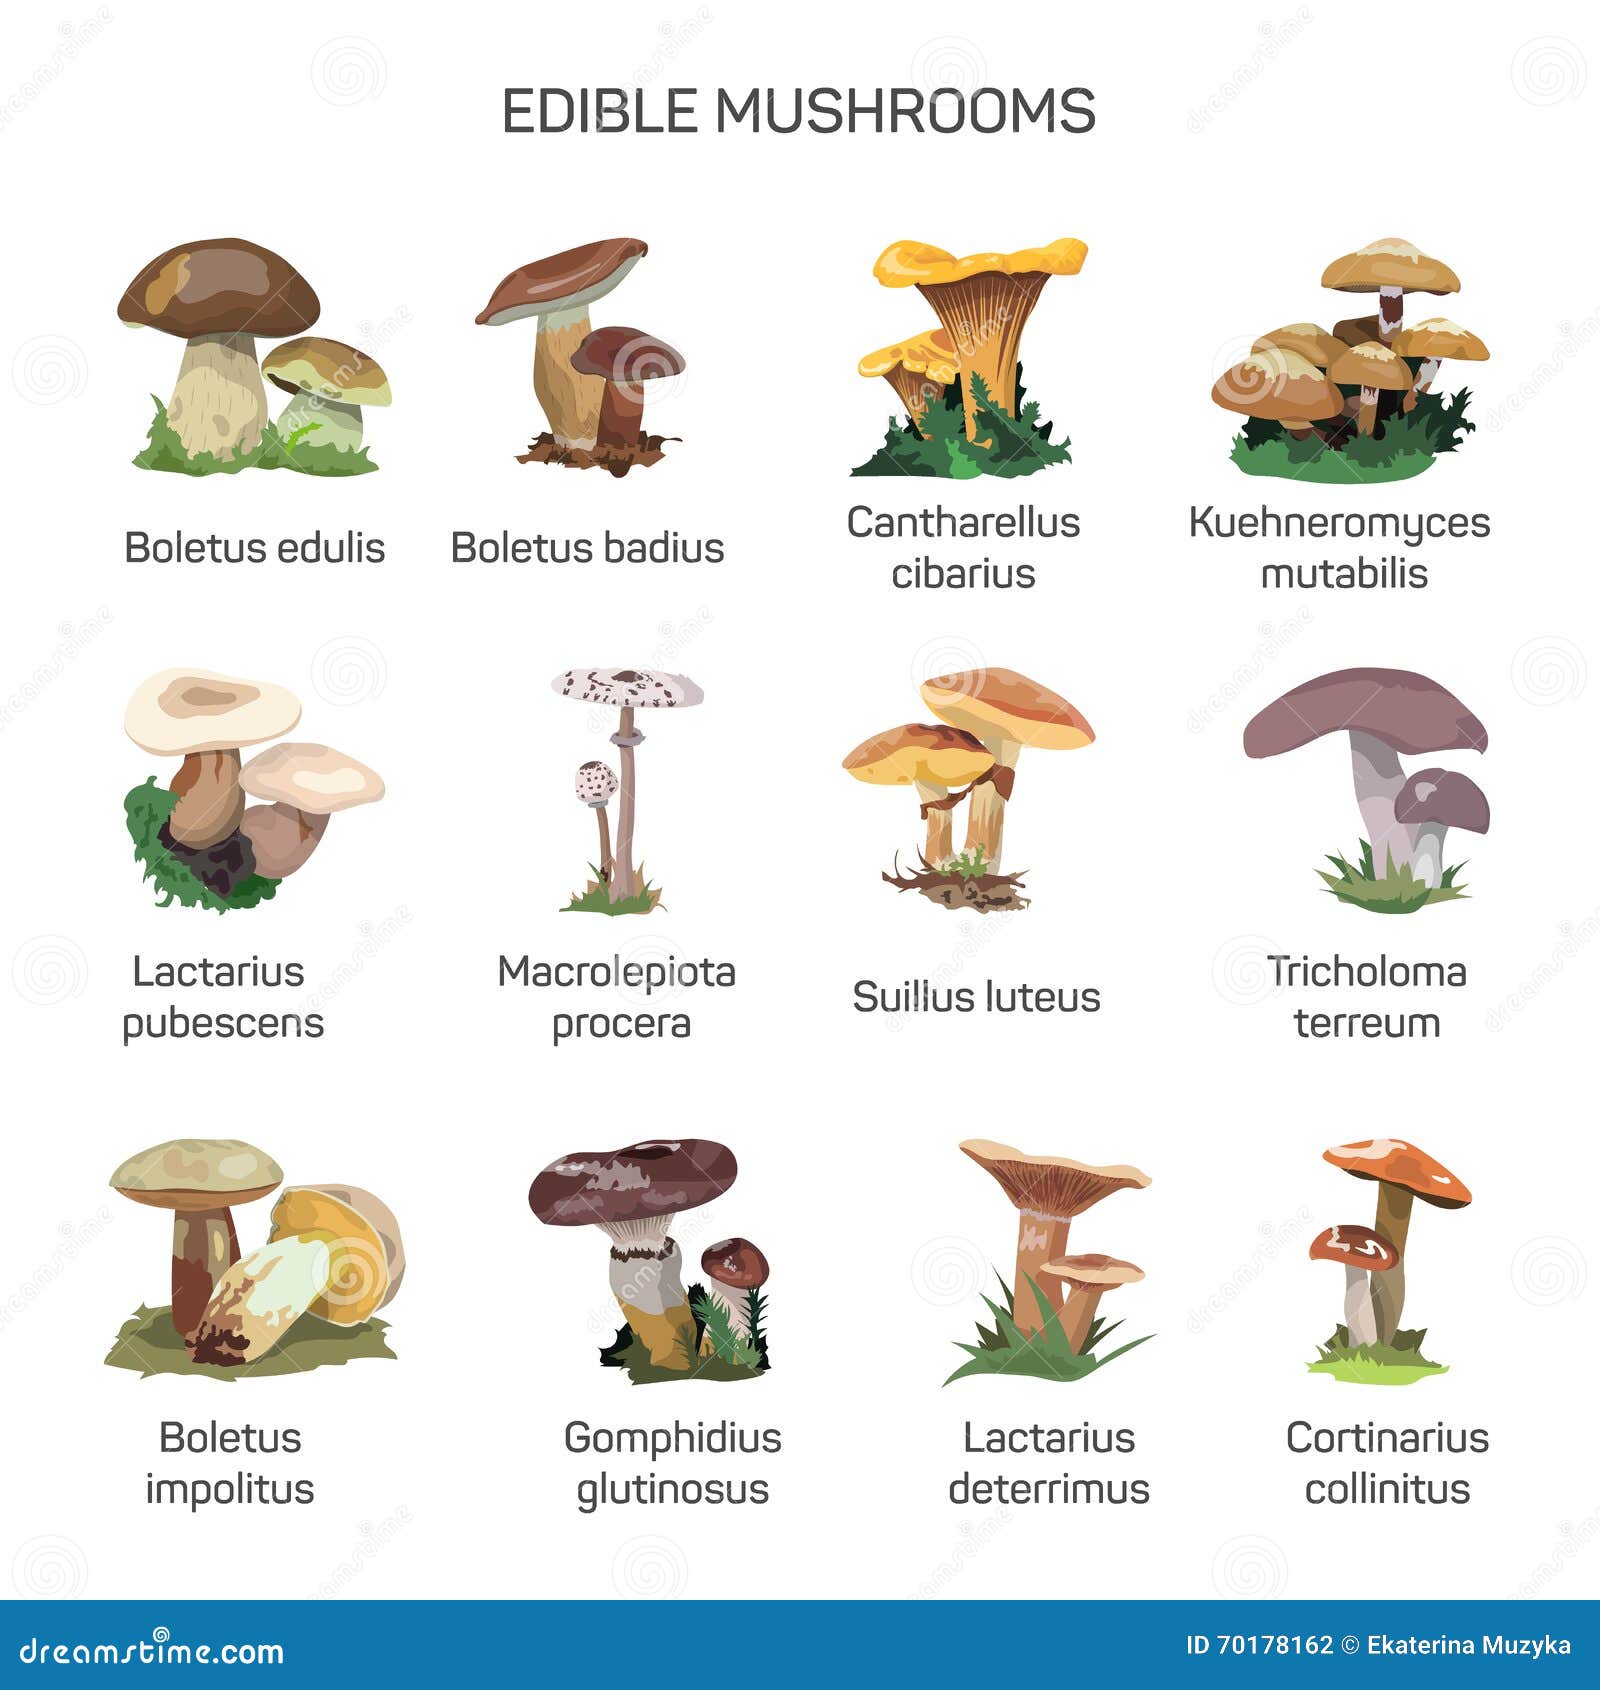 Kinds Of Edible Mushrooms - All Mushroom Info